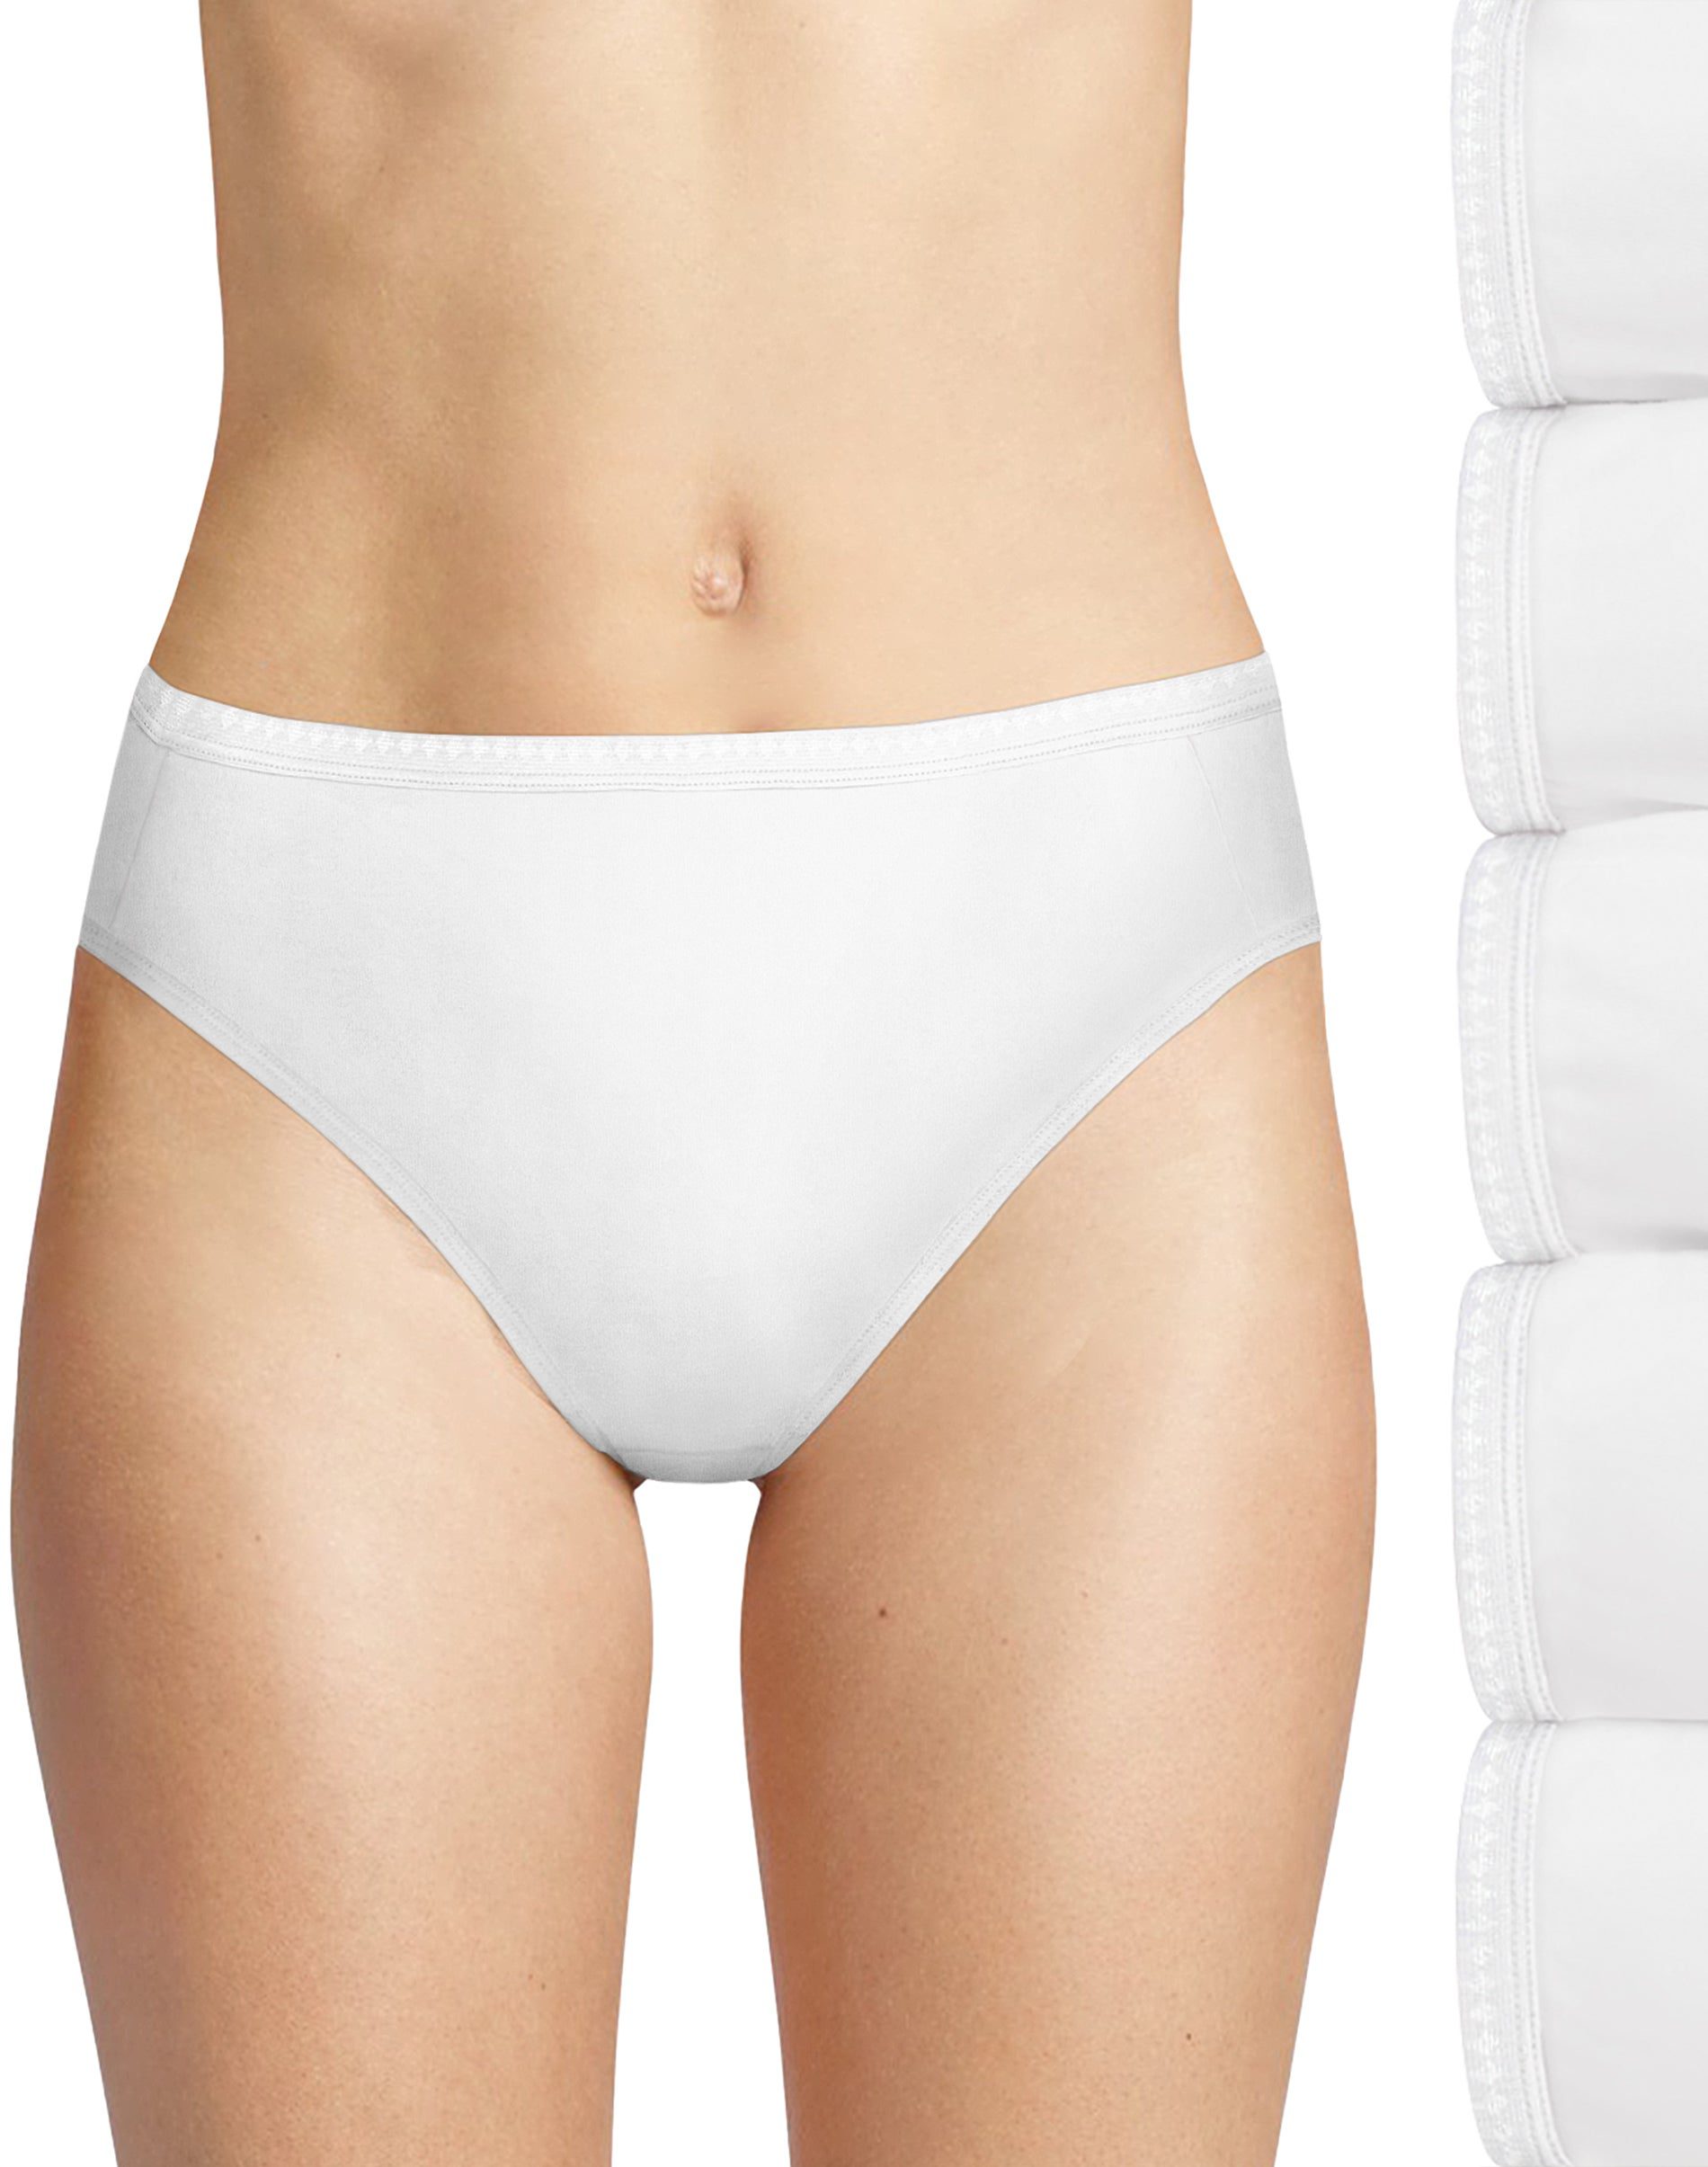 Hanes Women's Cotton Hi-Cut Underwear, 6-Pack 